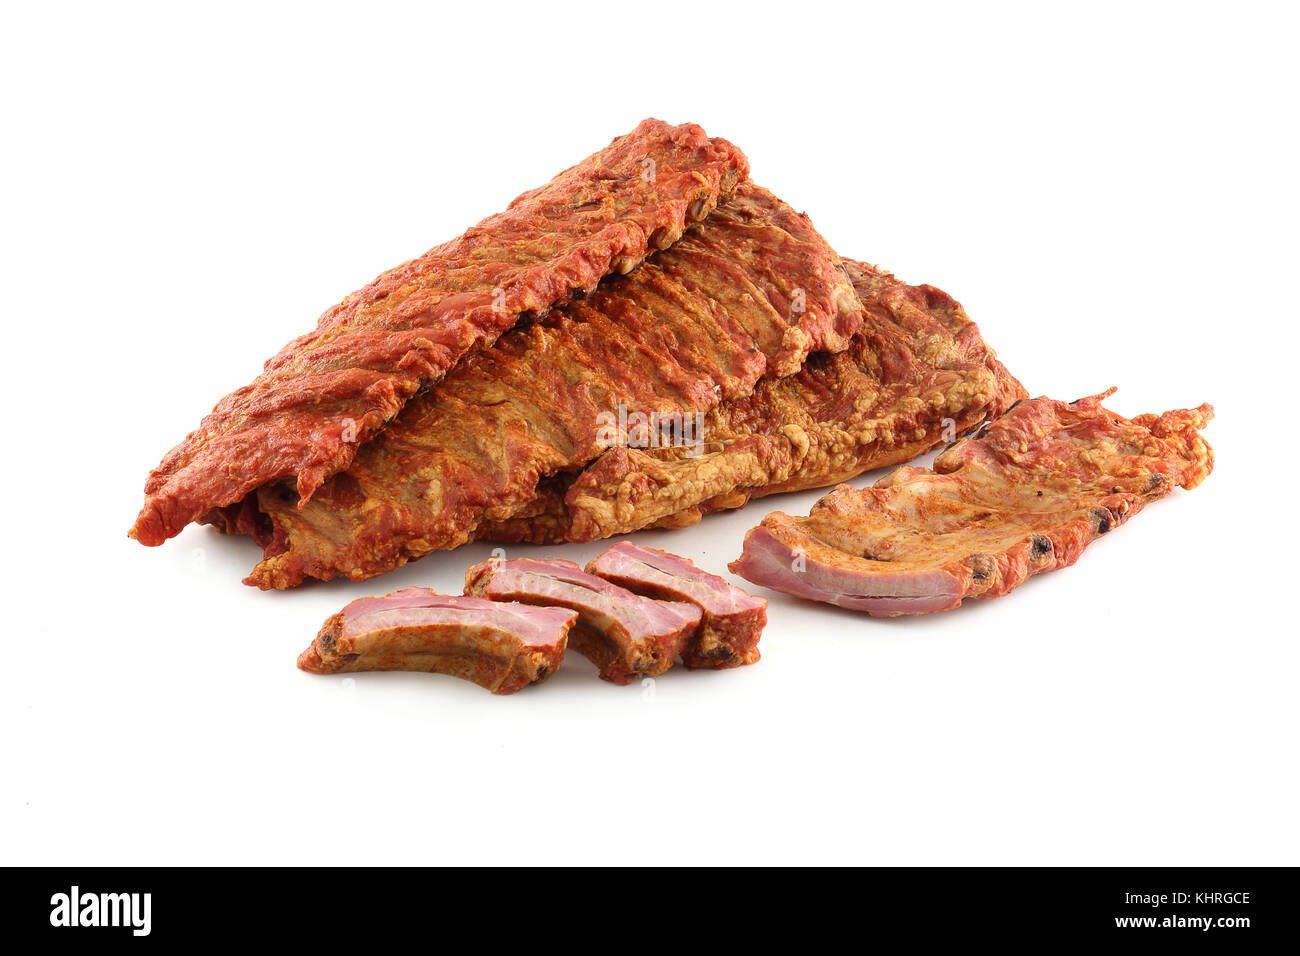 Pork ribs on white background Stock Photo